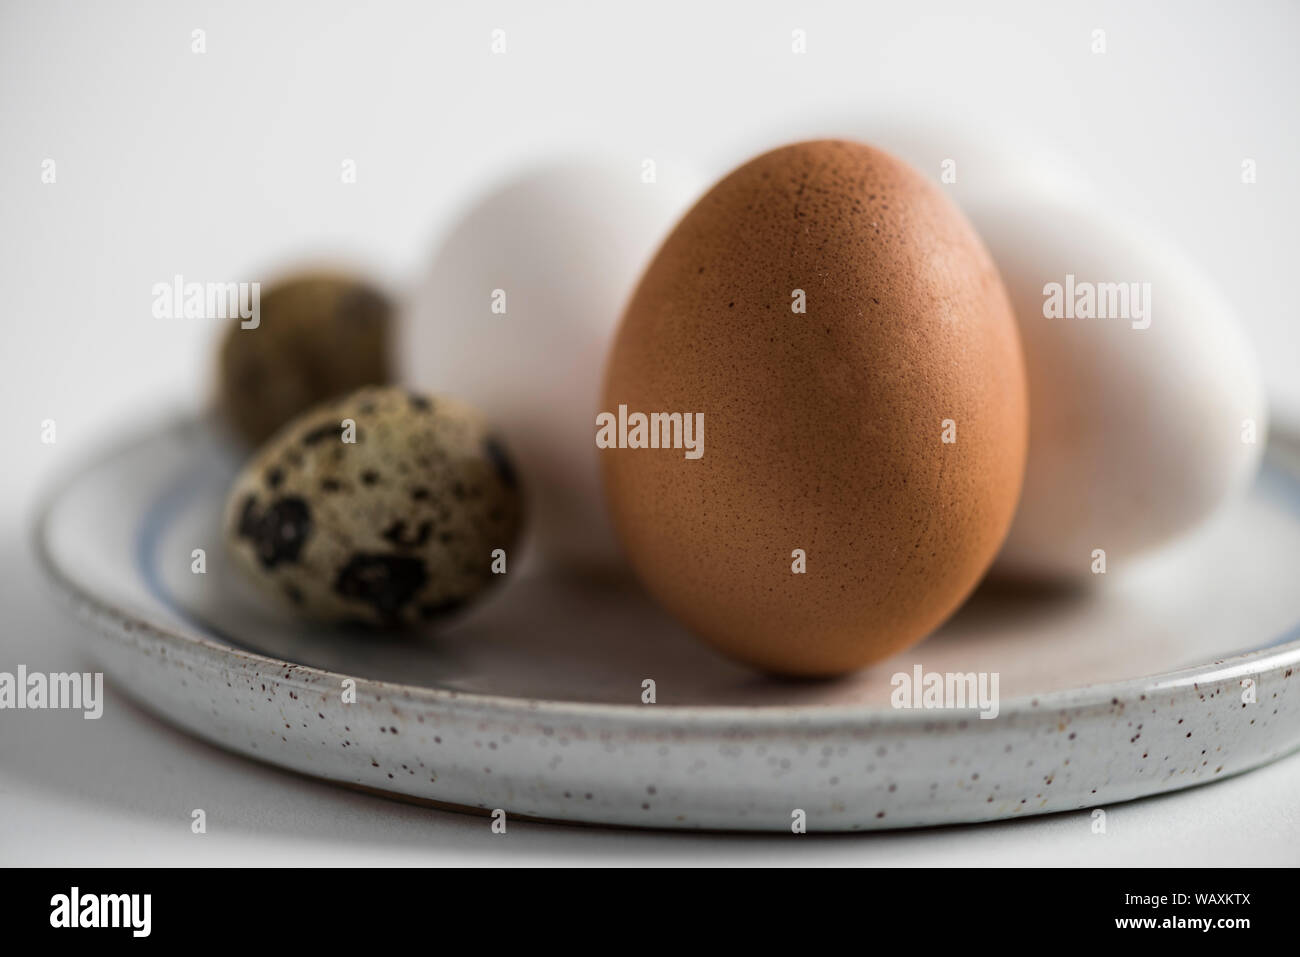 Marrone e bianco Uova di galline e uova di quaglia su una piastra di stile rustico. Immagine ravvicinata, immagine artistica. Foto Stock